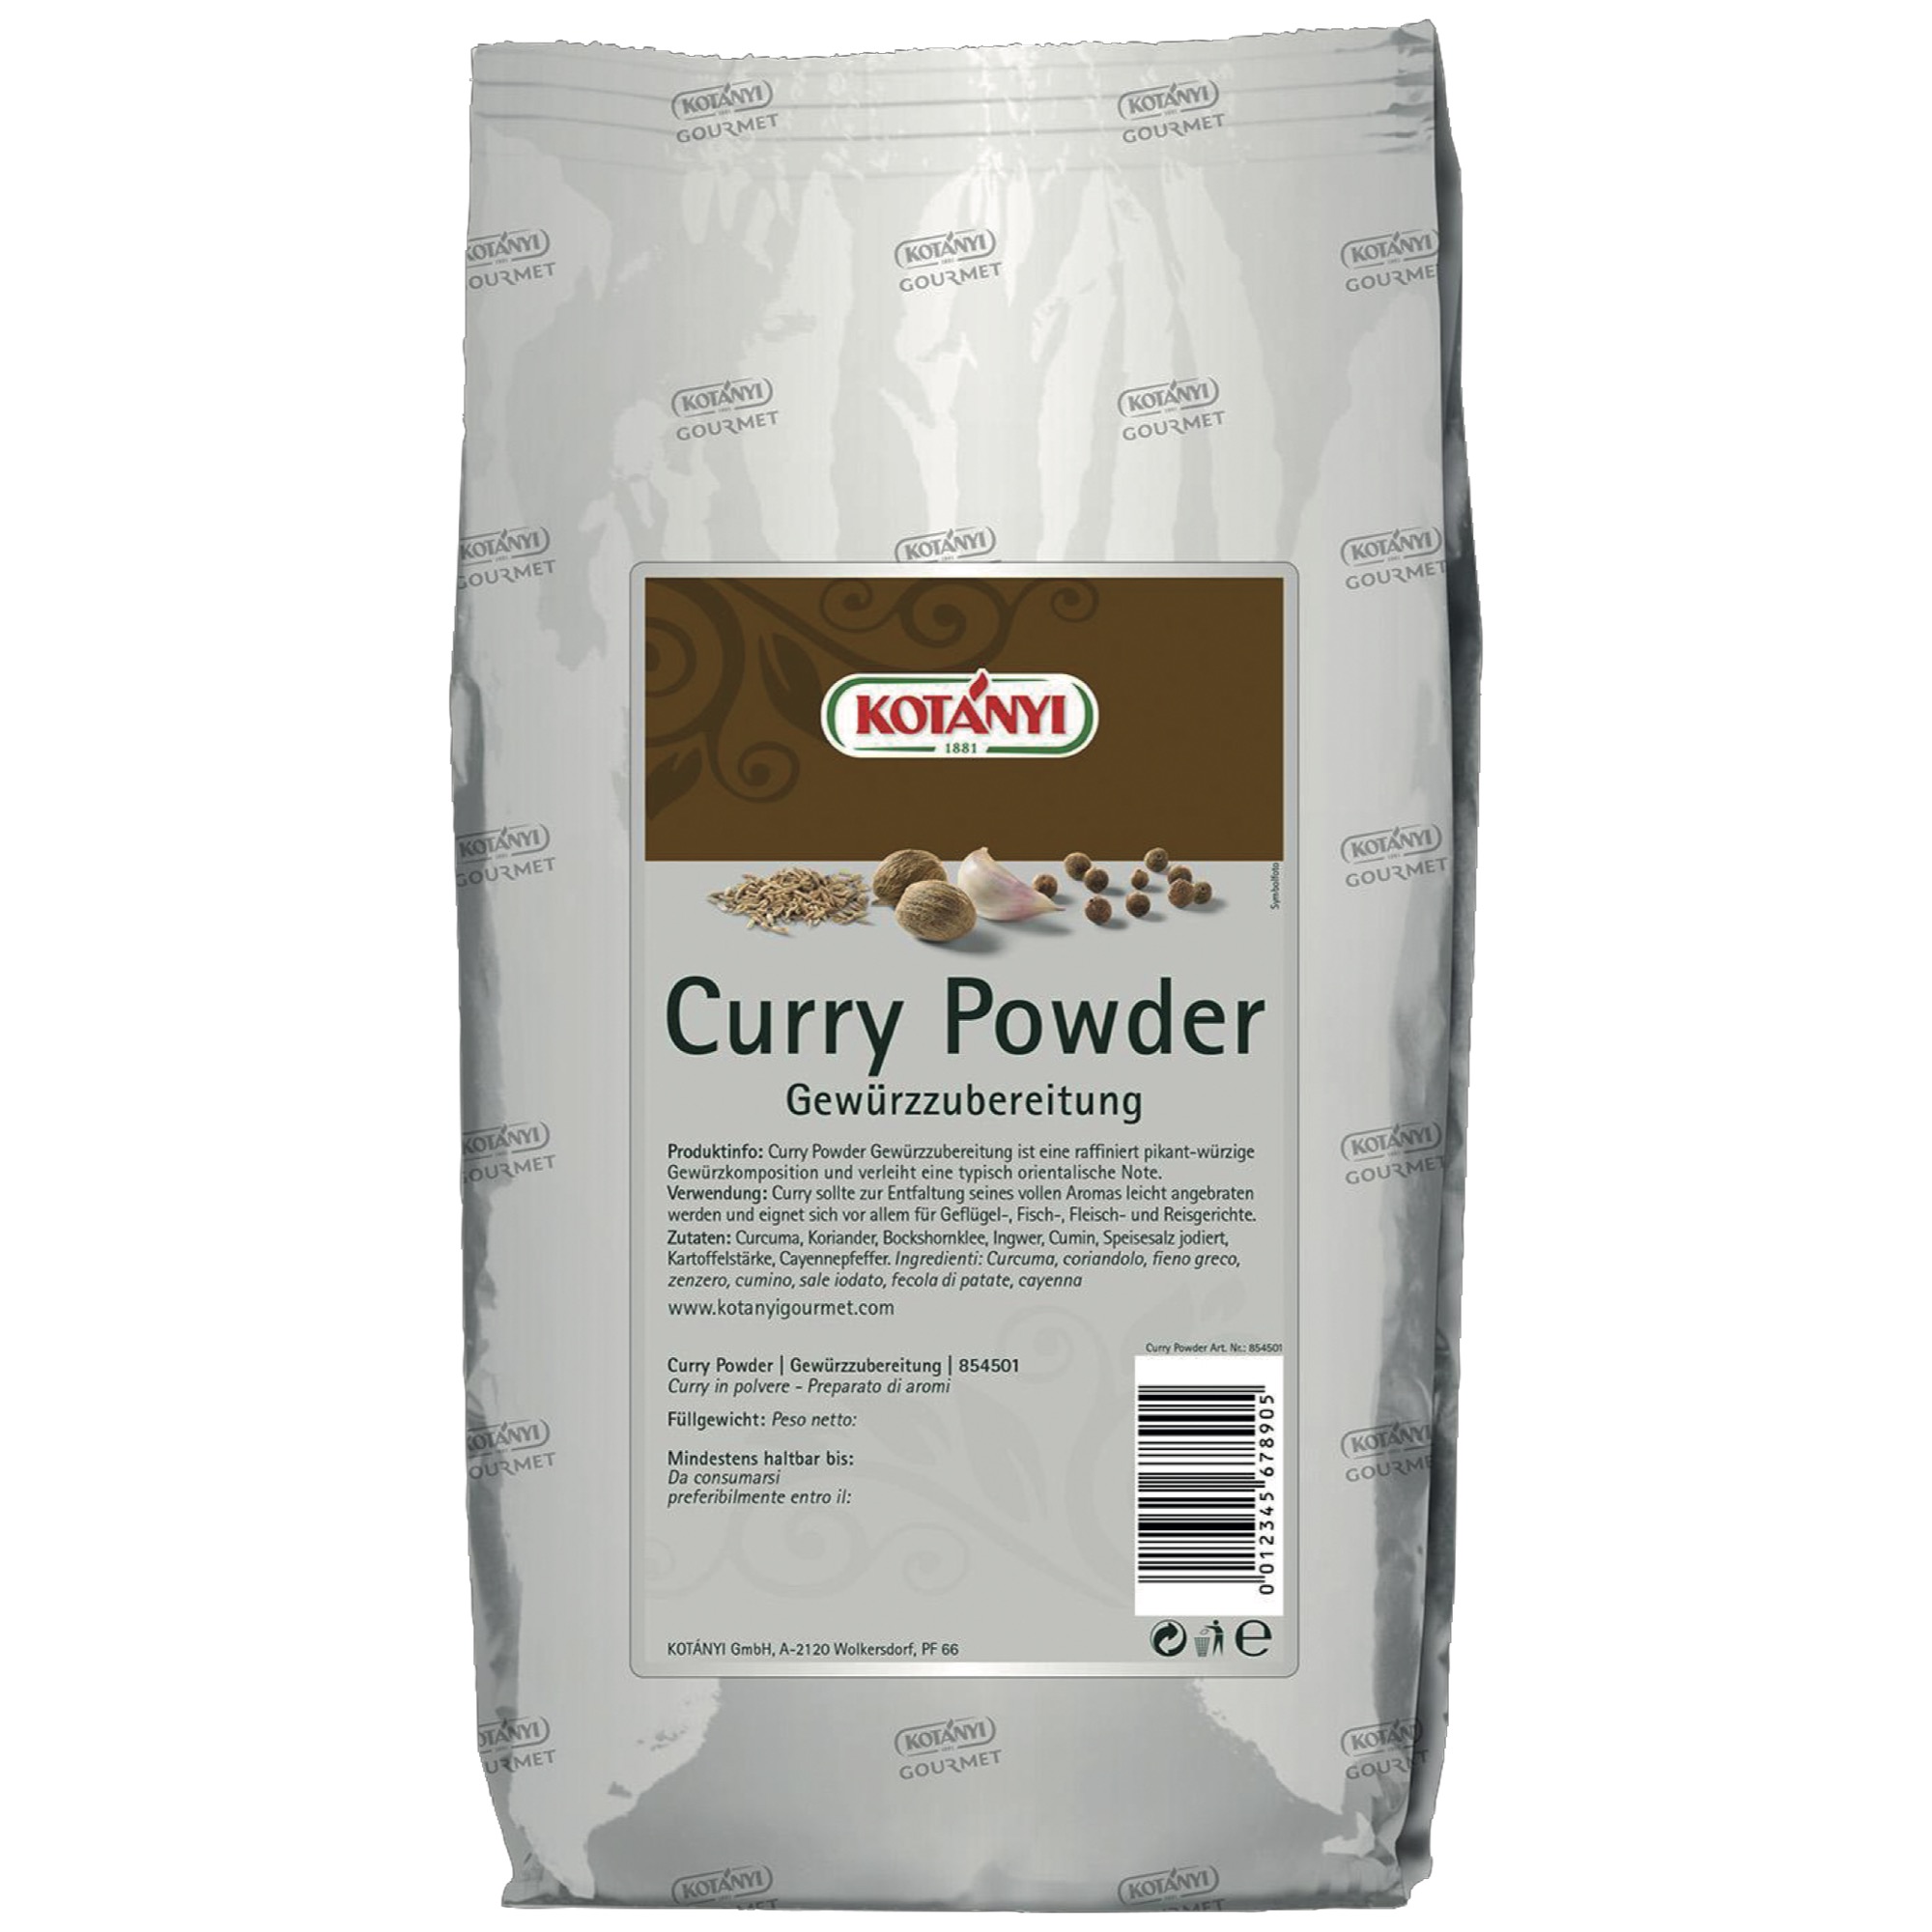 Kotanyi Curry Powder 1kg